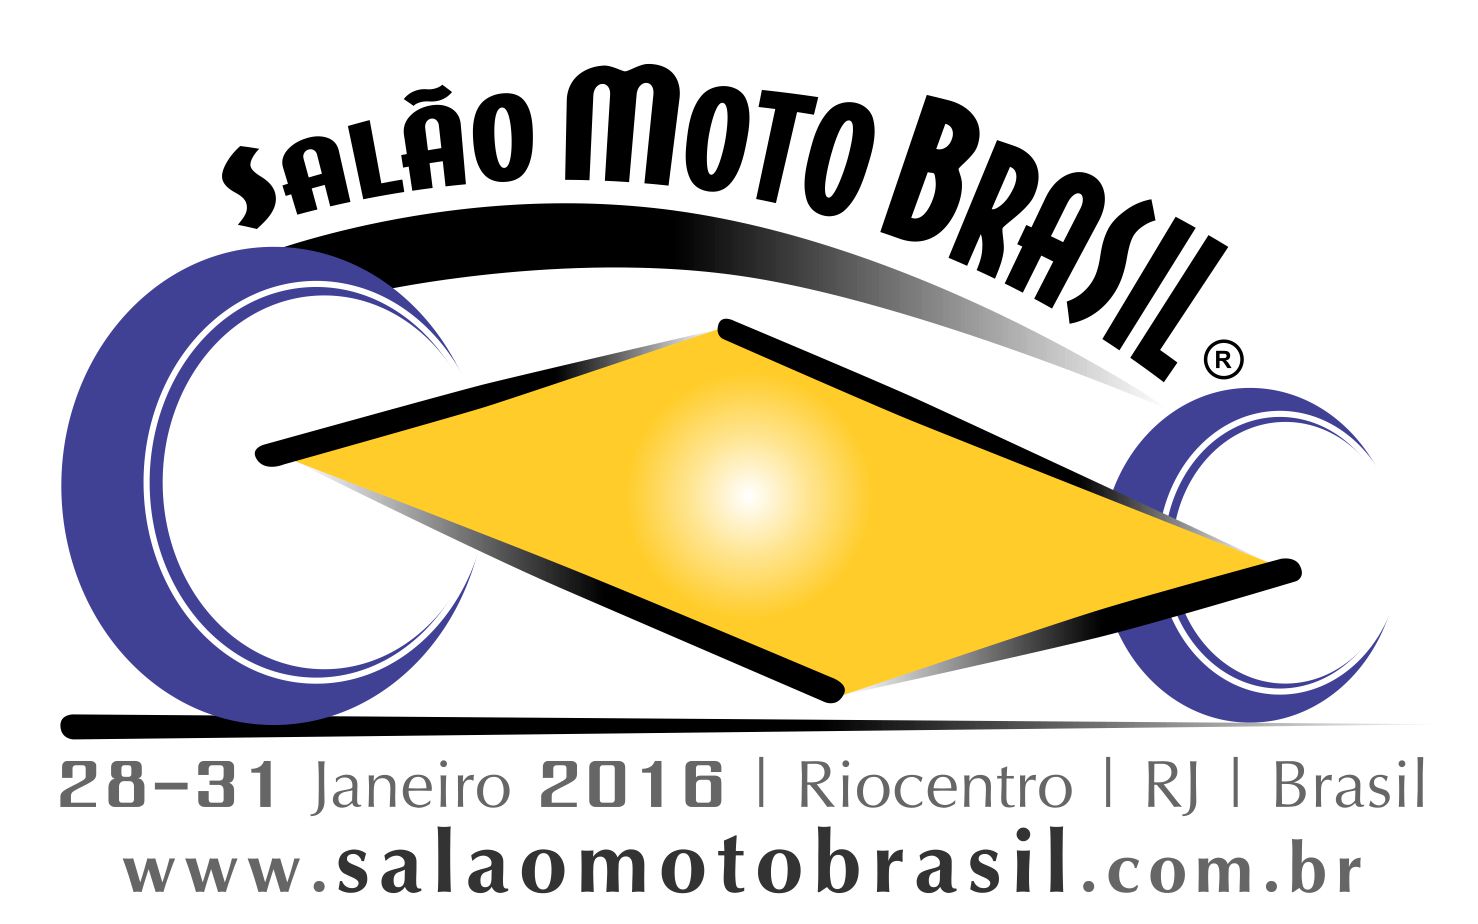 Salão Moto Brasil -Logo final-data-www 01